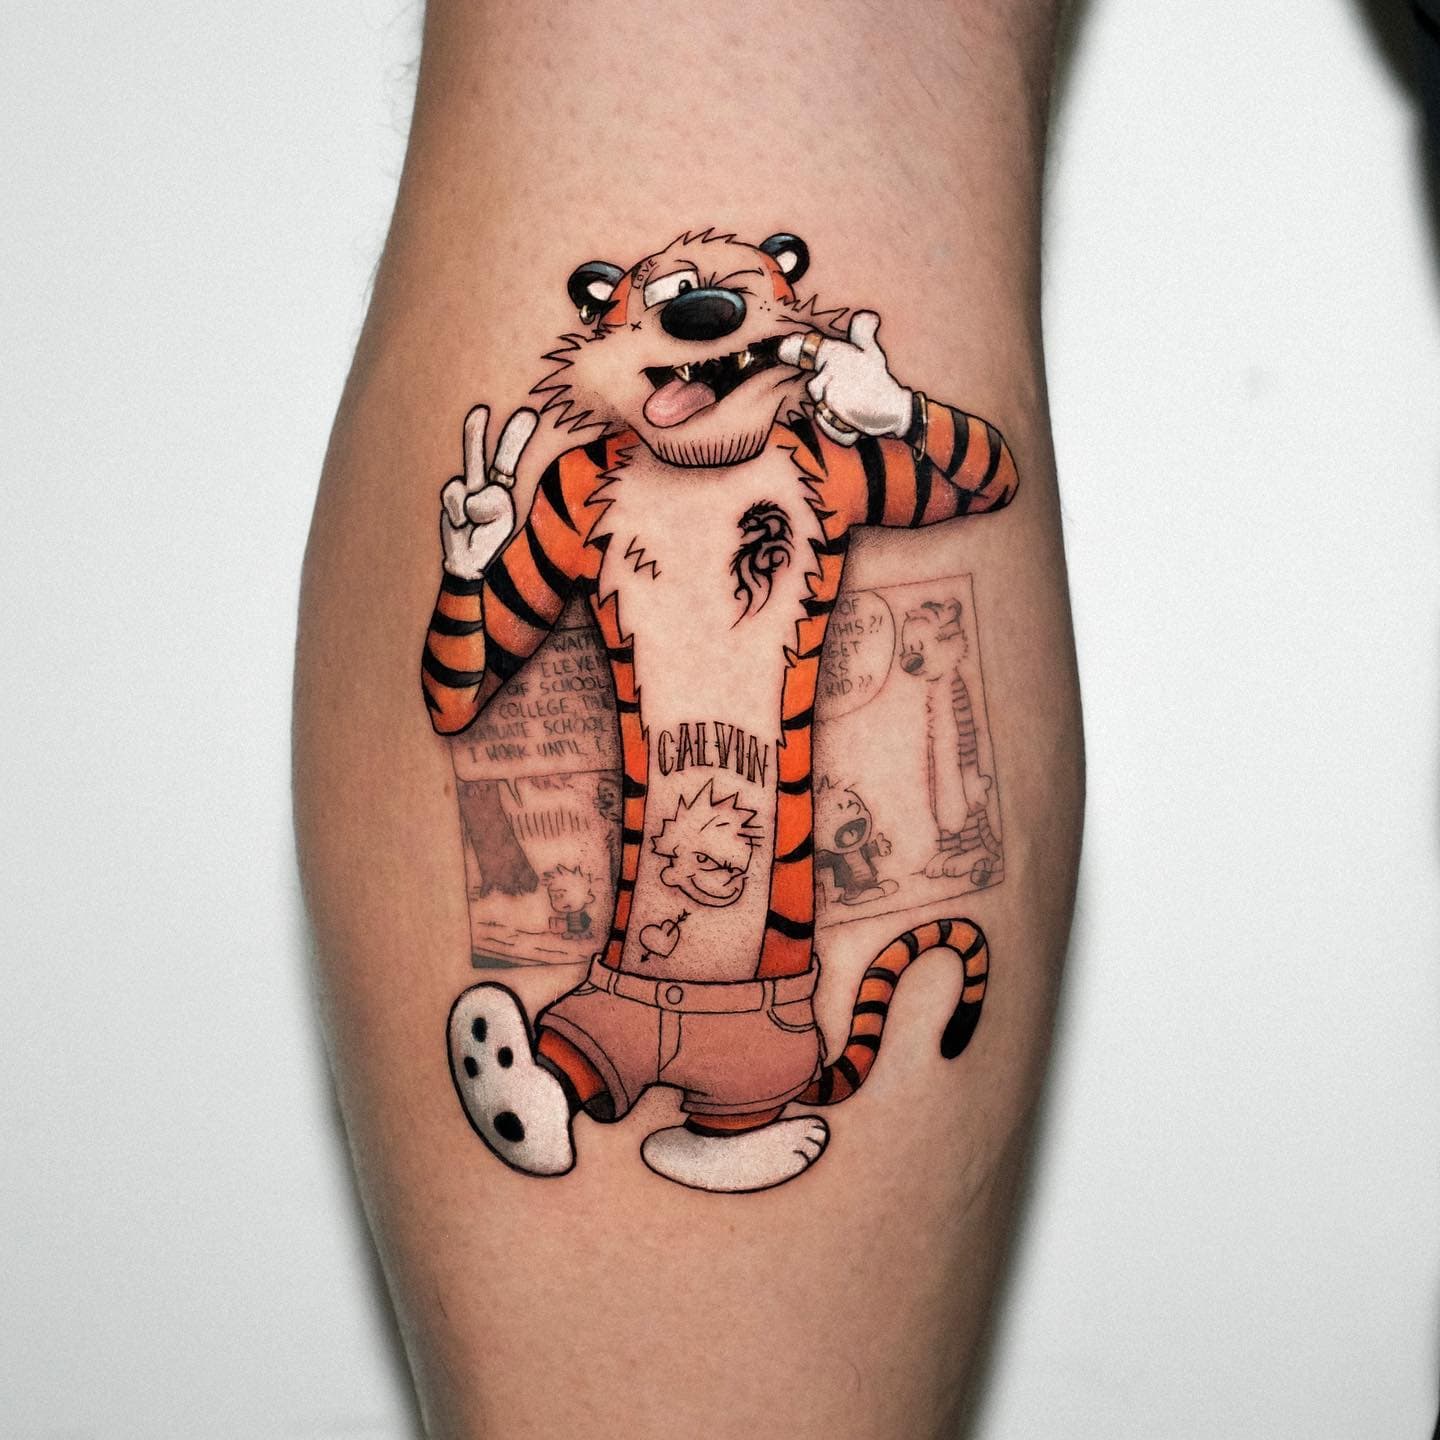 Calvin and Hobbes Tattoo for Adam tattoo tattooideas comics cartoon  tattooing  YouTube